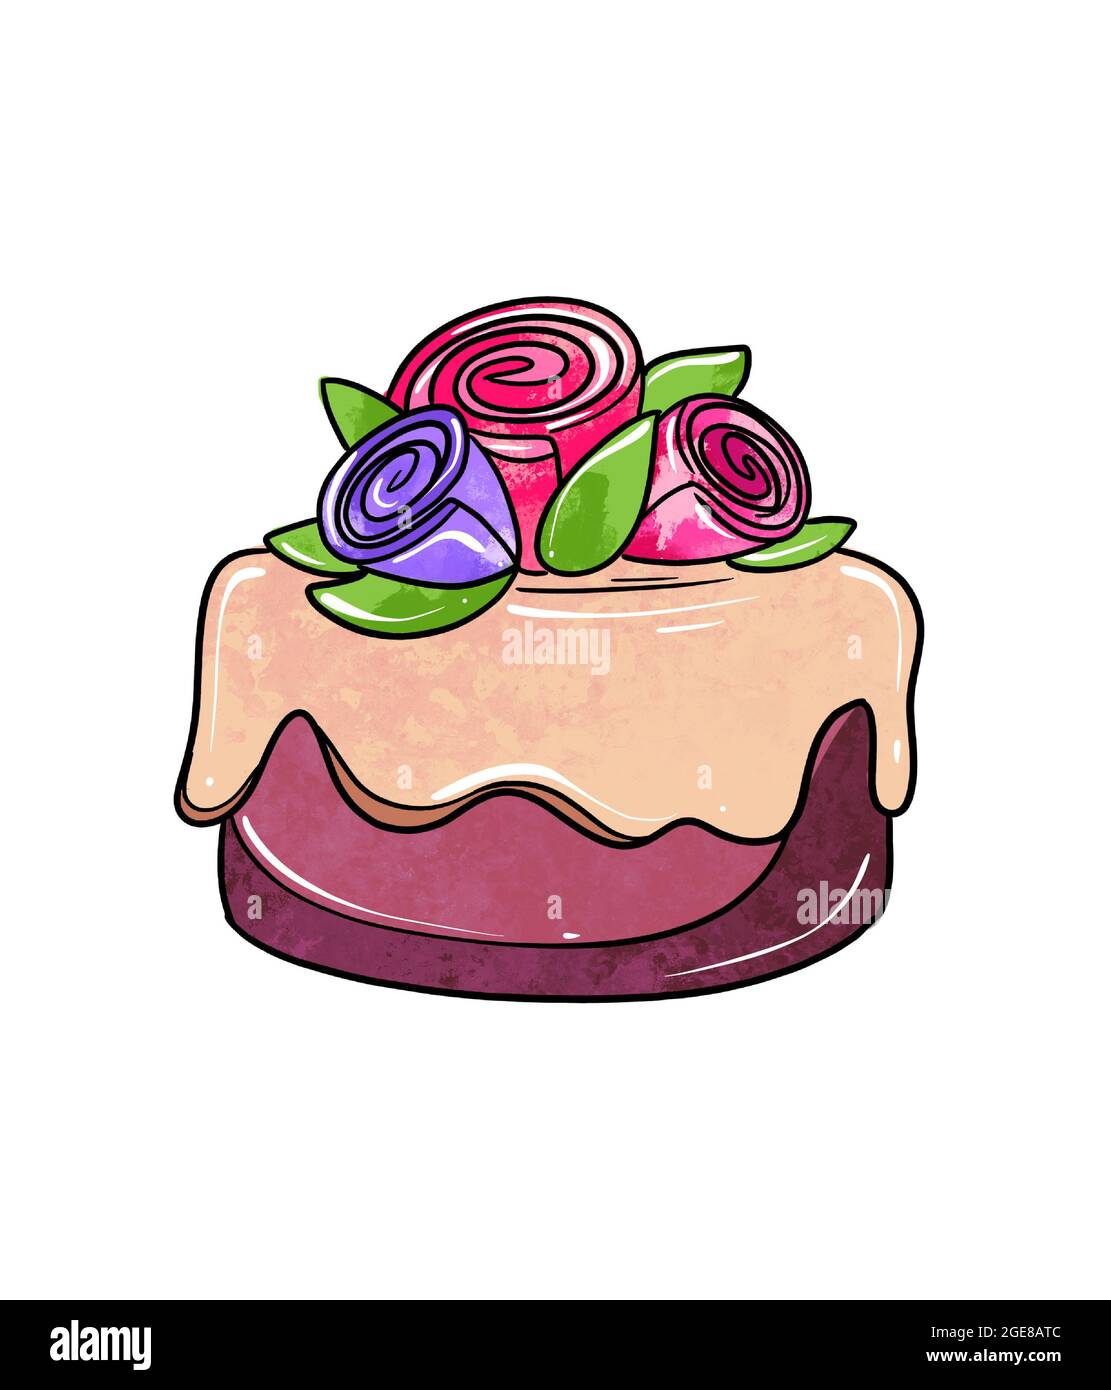 Illustration d'un dessin coloré de bonbons: Gâteau violet à la crème jaune-brun et décoré avec une fleur de roses sur un fond blanc isolé. Illustration de haute qualité Banque D'Images